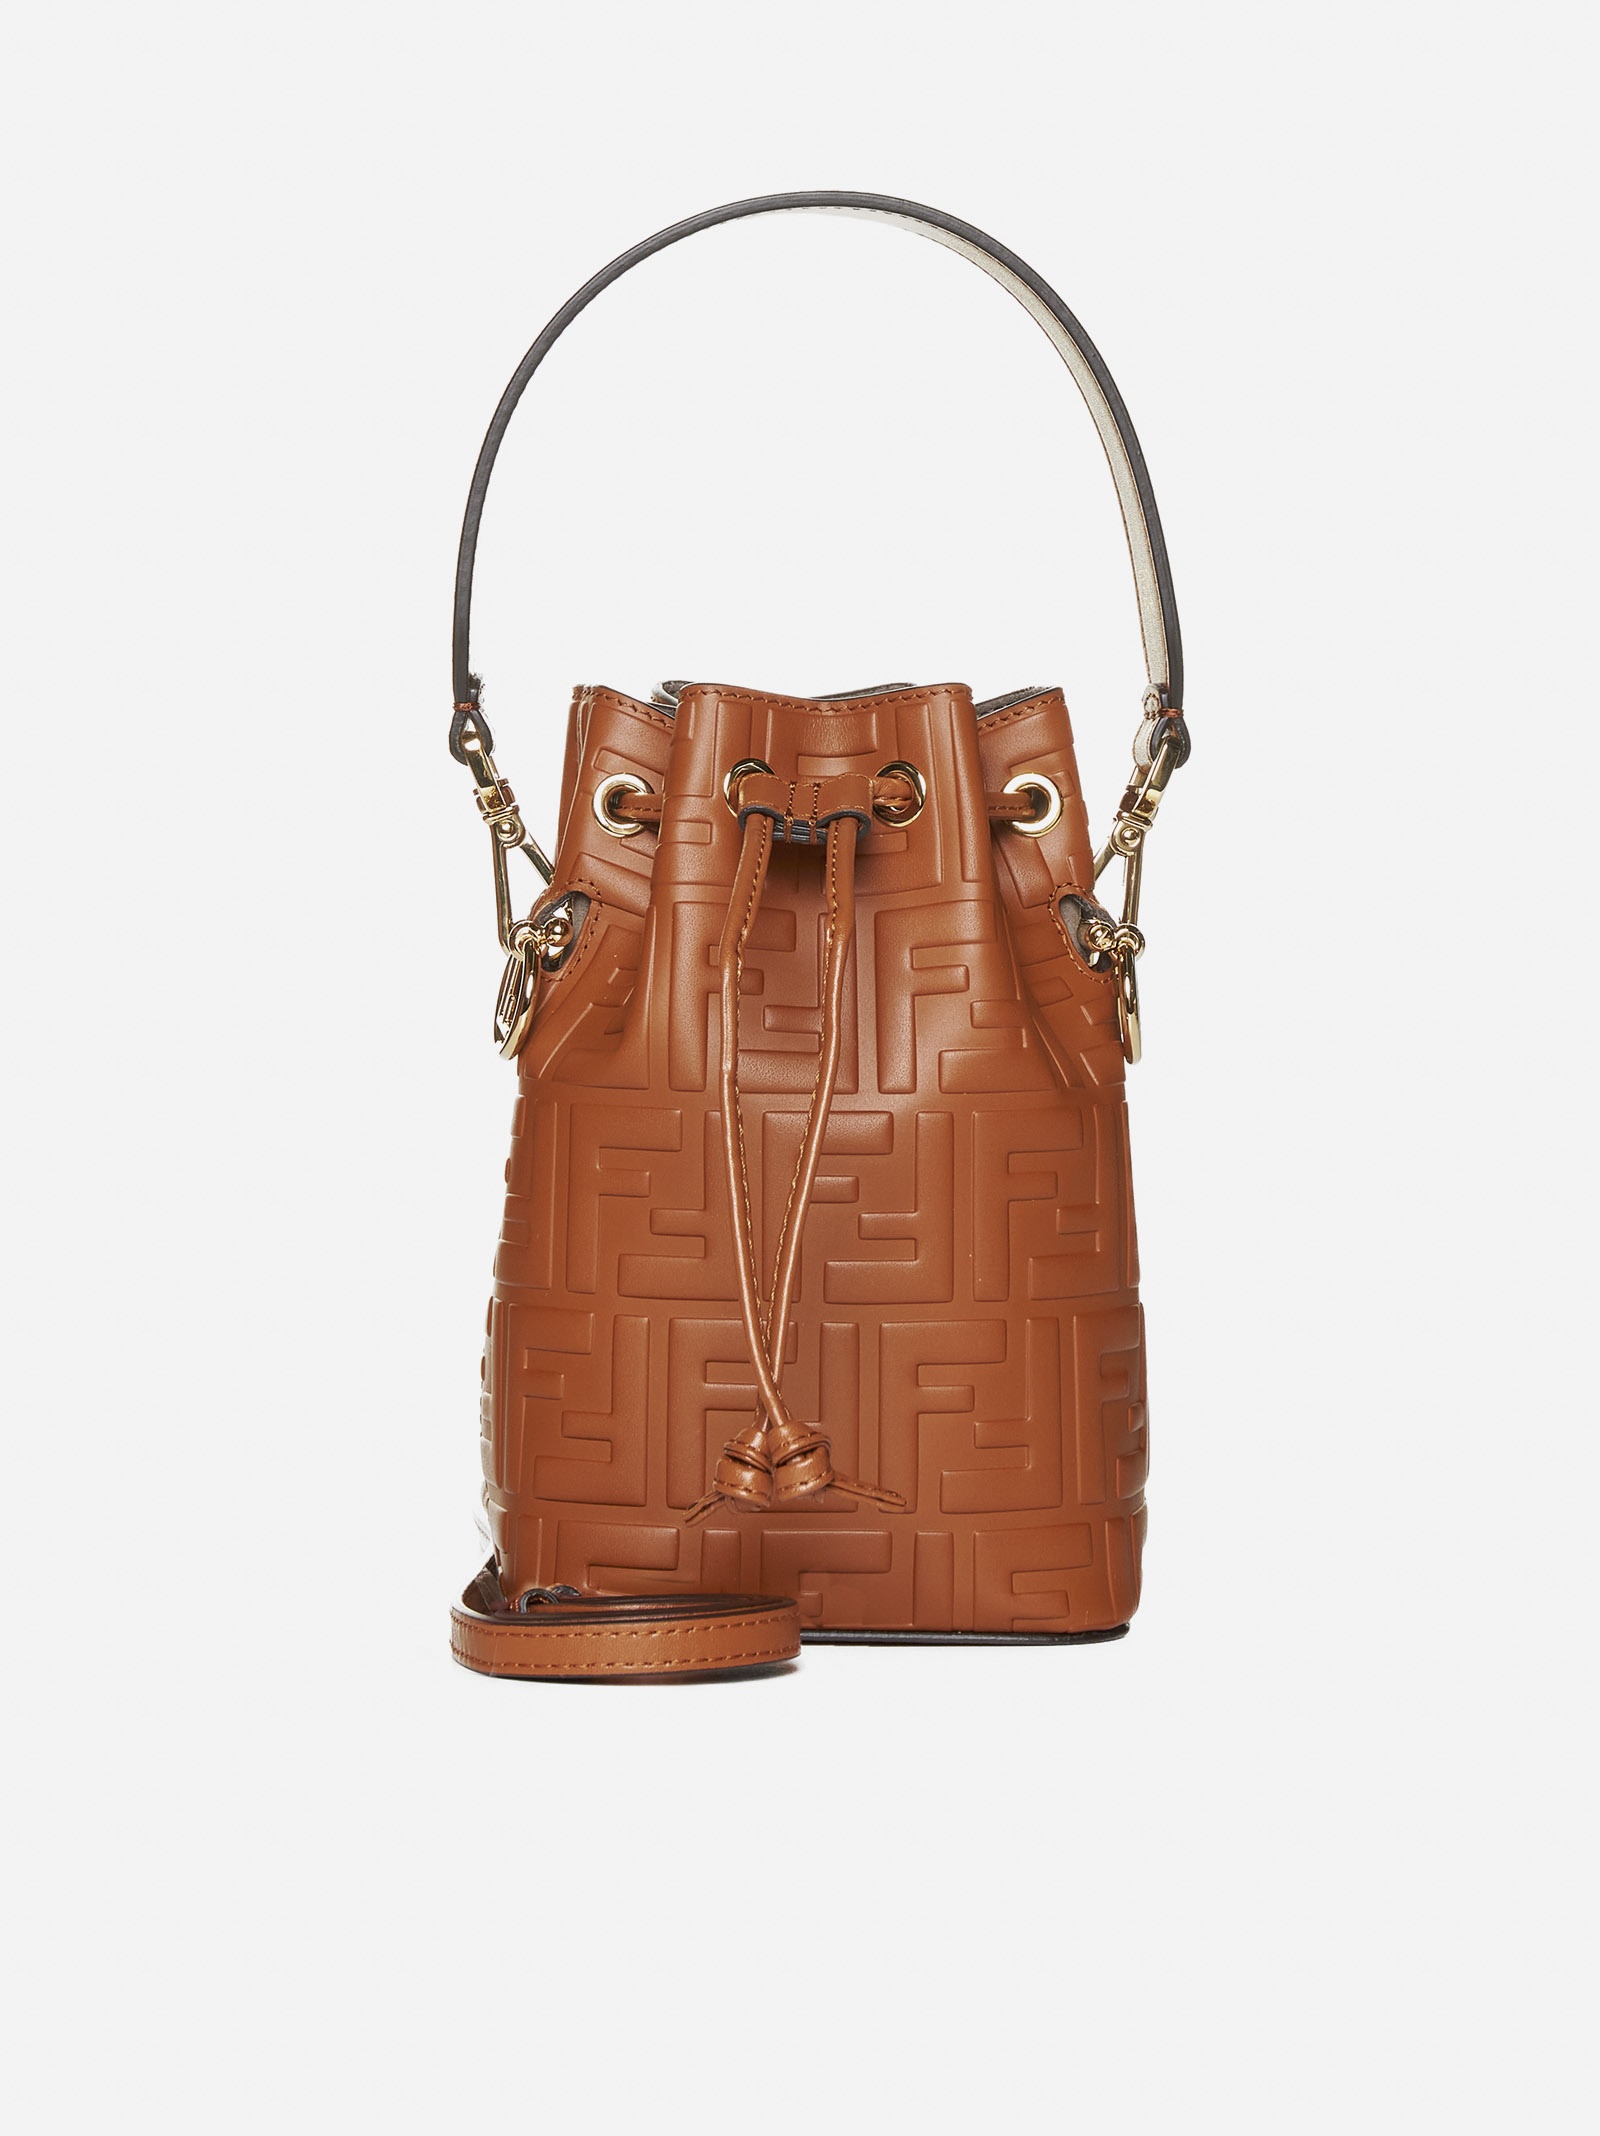 Fendi Mon Tresor Mini Leather Bucket Bag in Brown